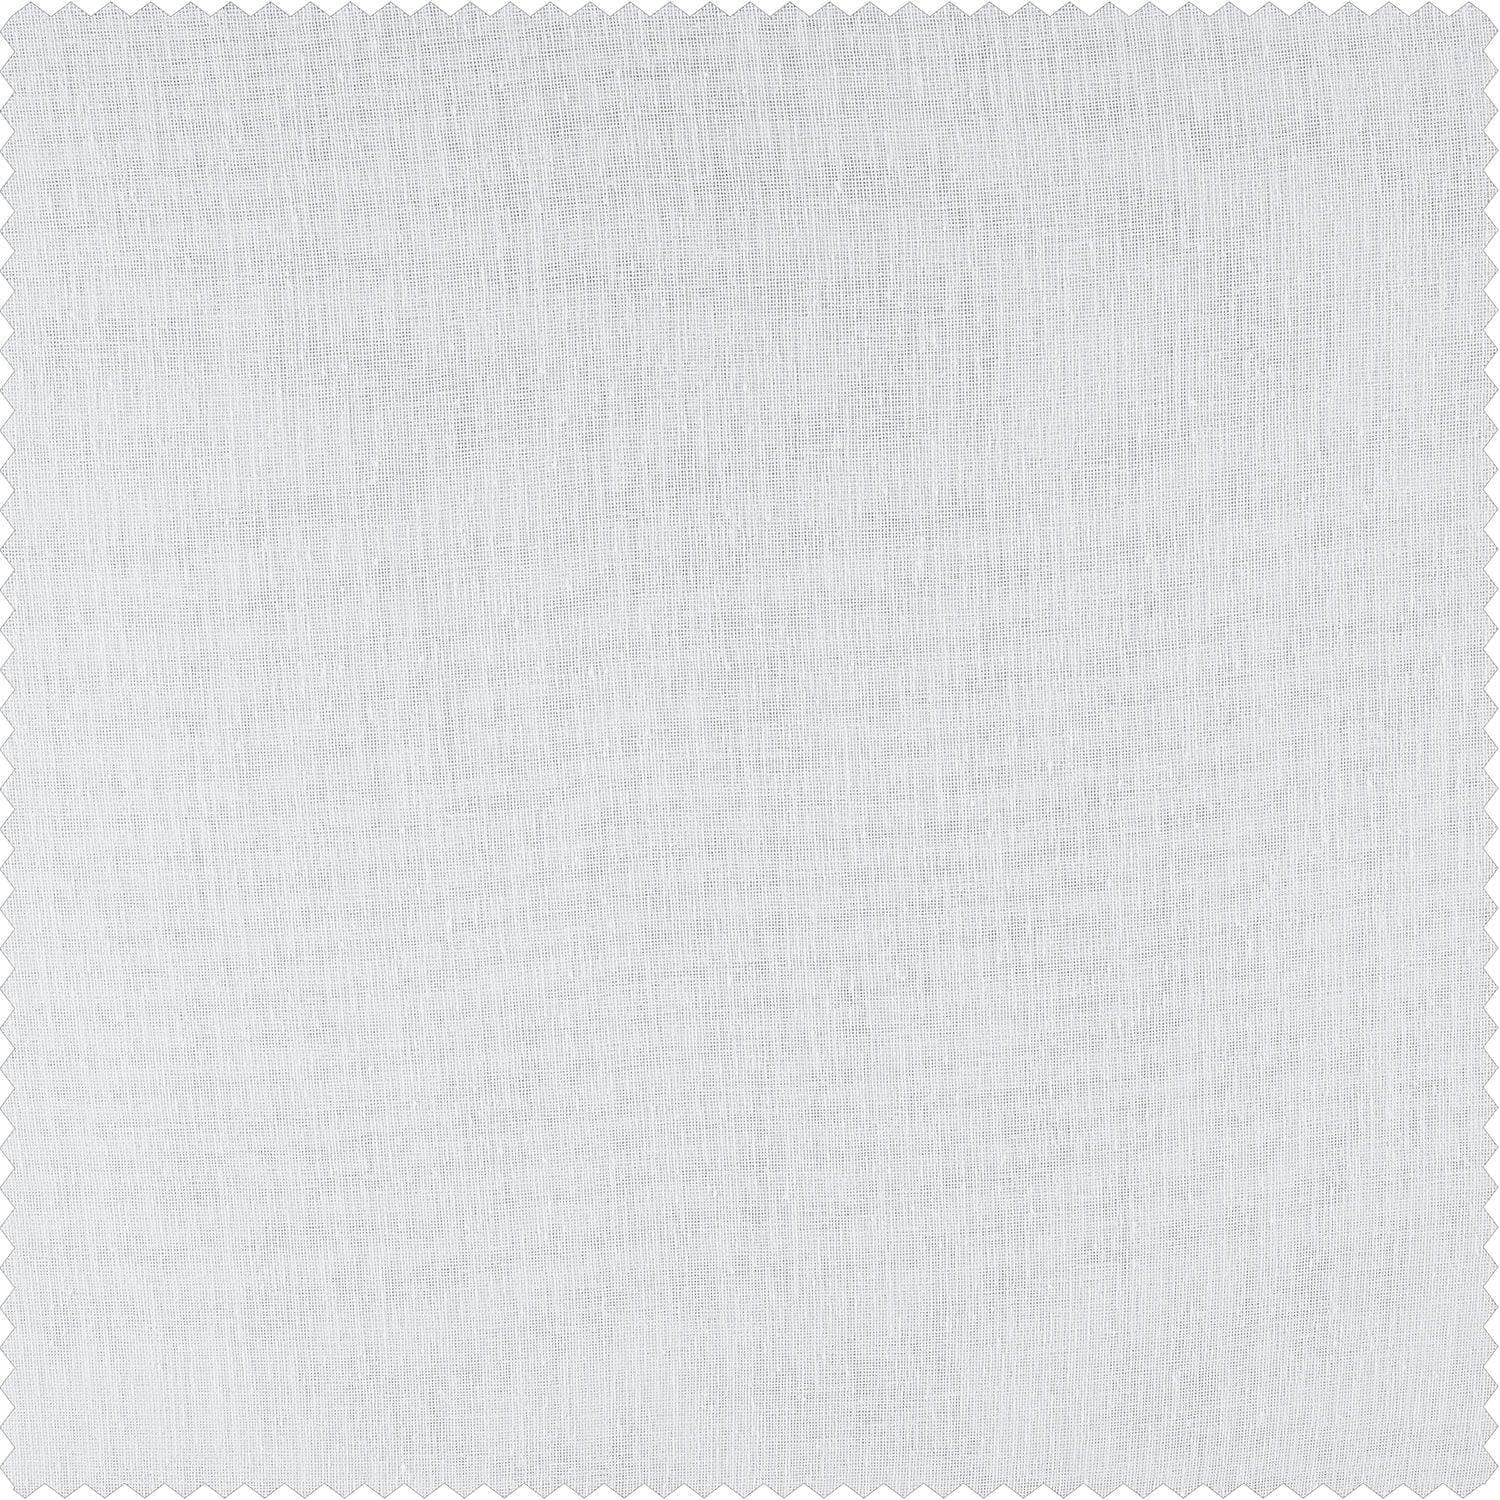 Aspen White Grommet Textured Faux Linen Sheer Curtain